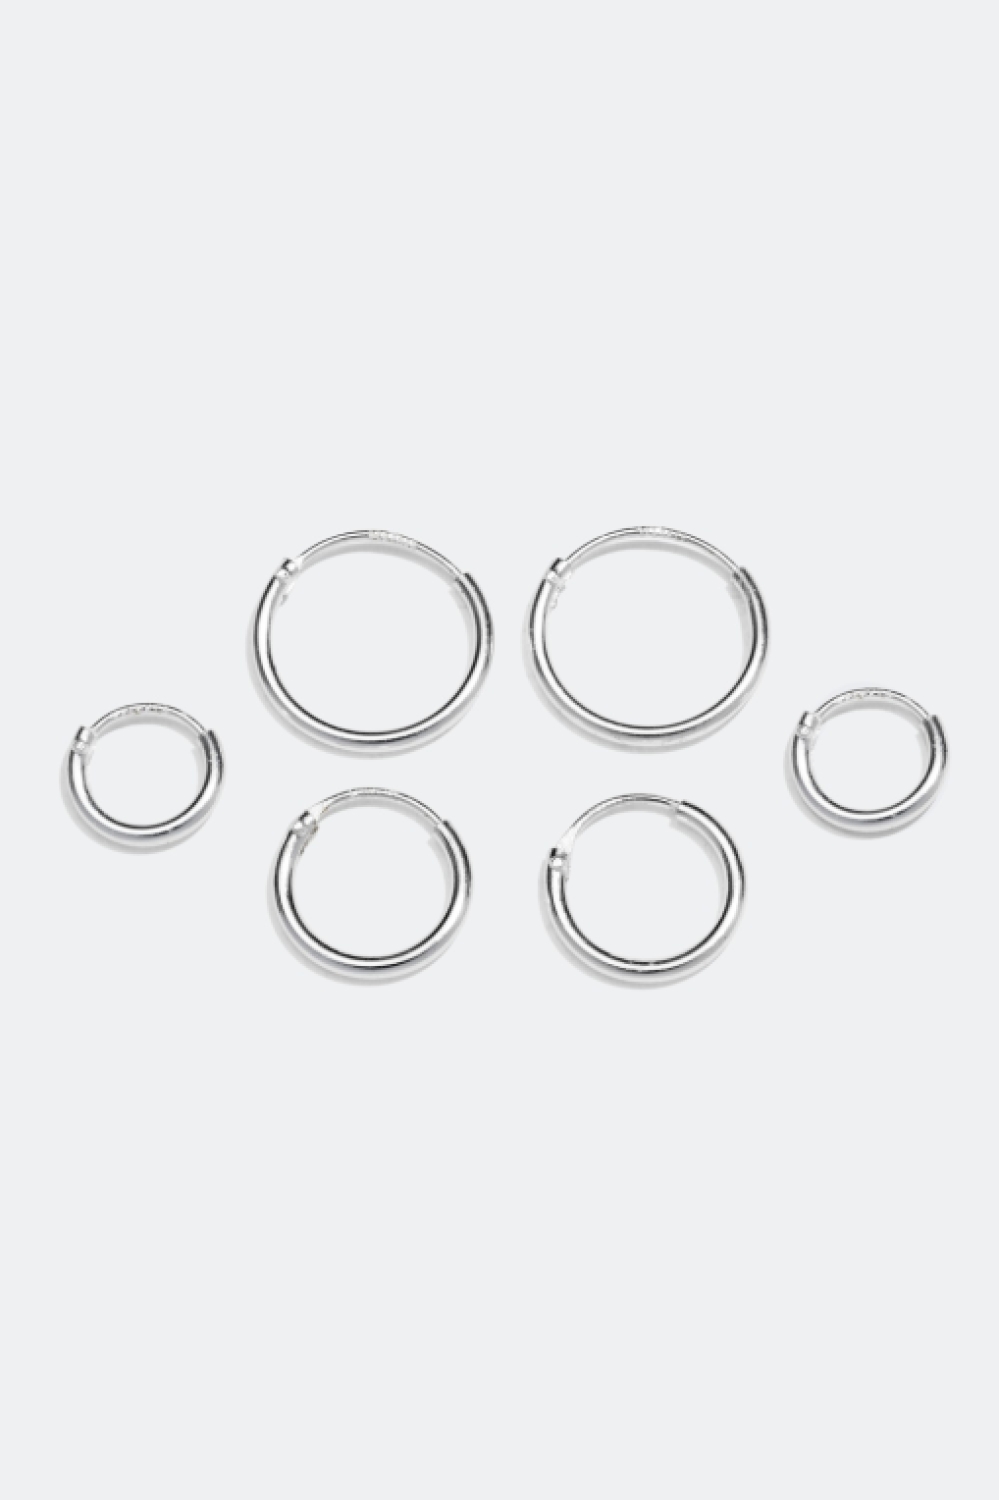 Hoops i ægte sølv, 3-pak, 1 cm i gruppen Ægte sølv / Sølvøreringe / Hoops i ægte sølv hos Glitter (307411011000)